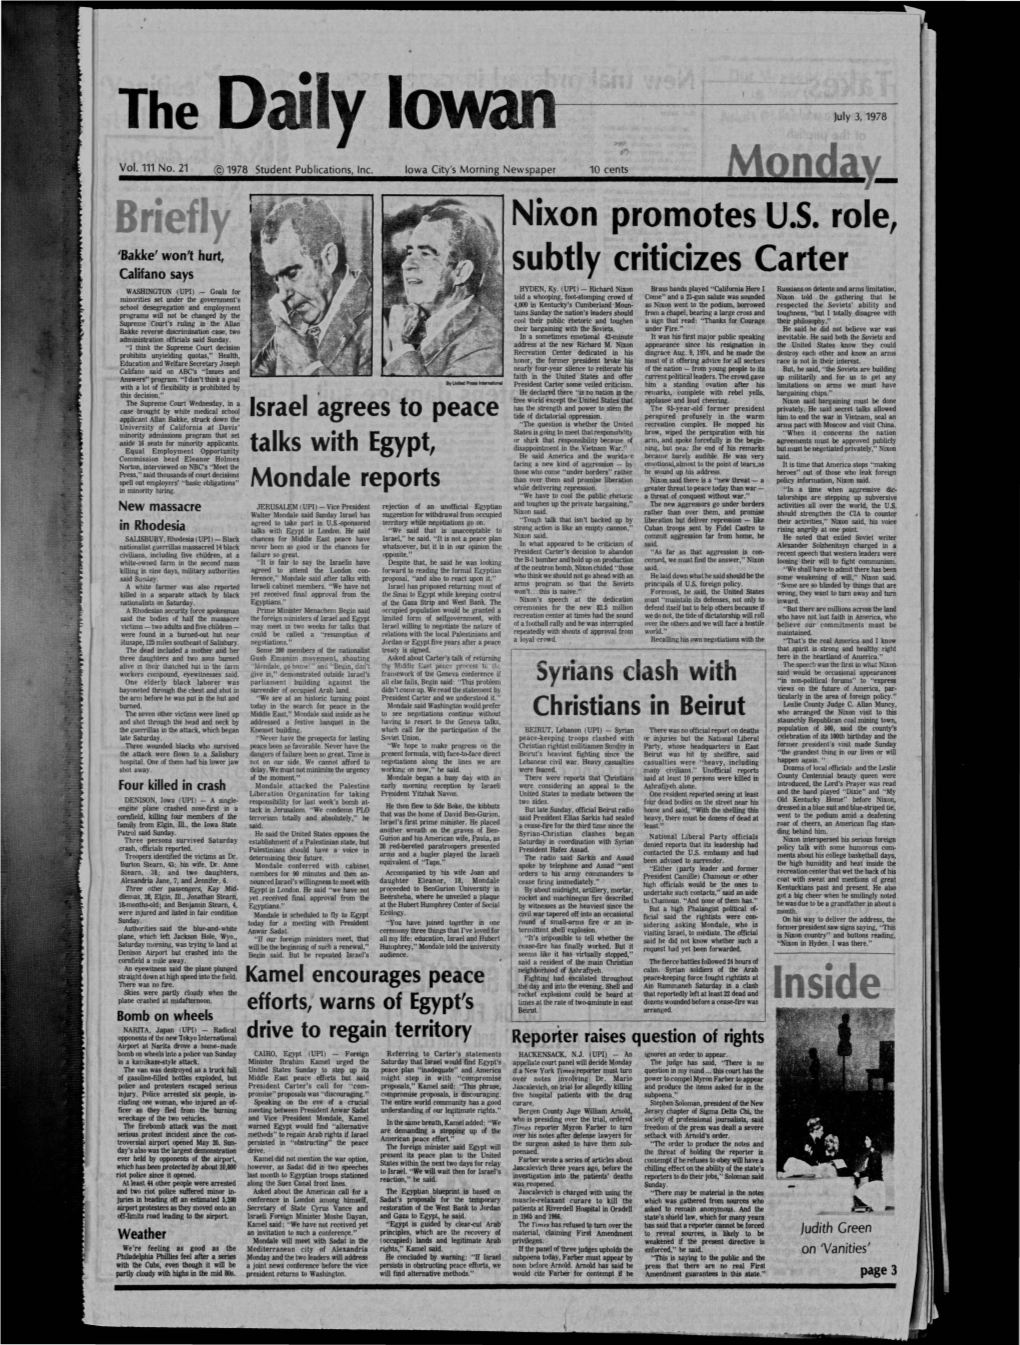 Daily Iowan (Iowa City, Iowa), 1978-07-03